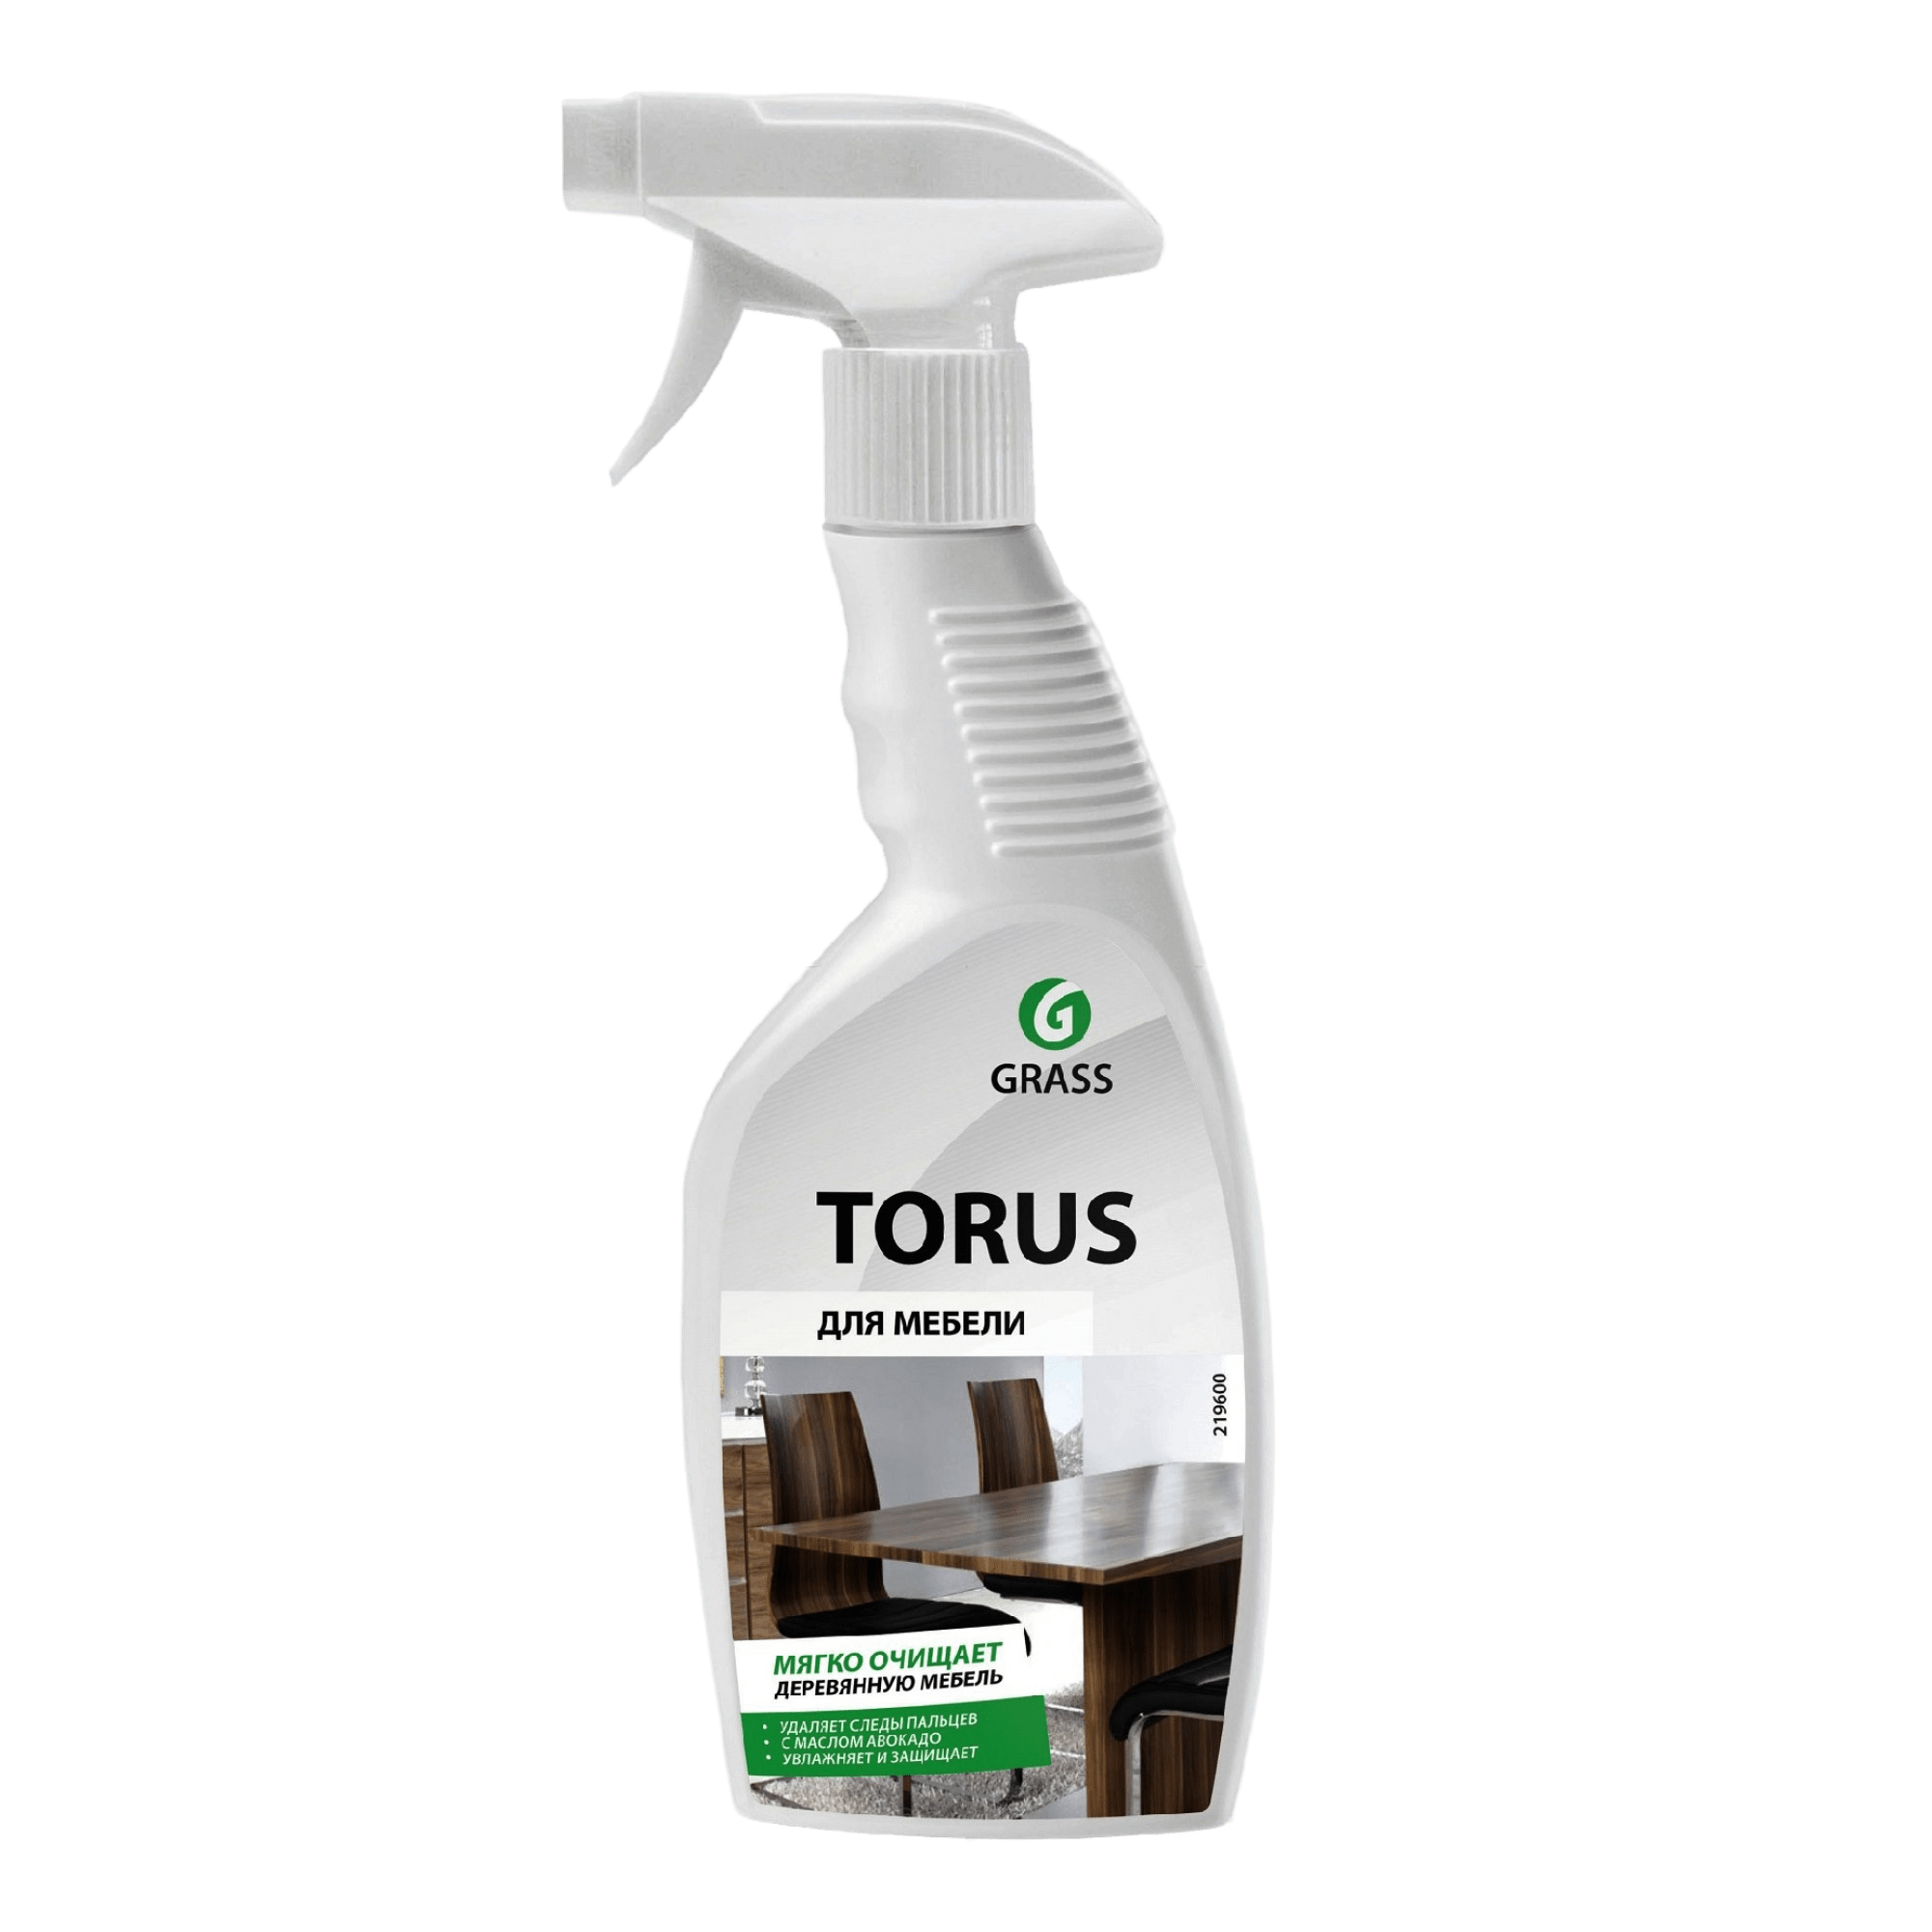 GRASS Очиститель-полироль для мебели Torus триггер 600 мл (219600)